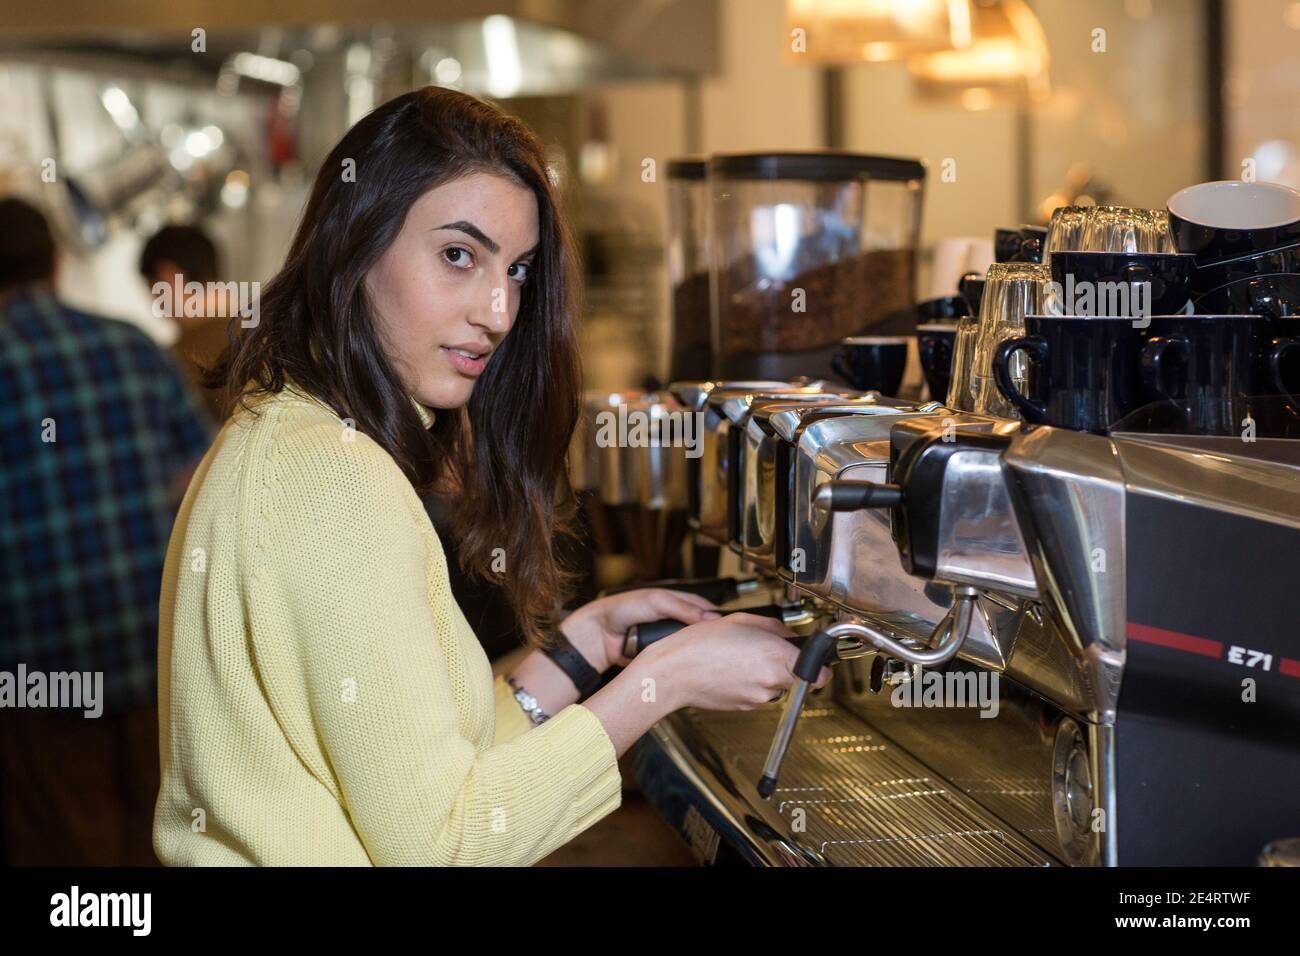 Coffee Business Concept - ritratto della signora barista che prepara l'ordine del caffè con la macchina espresso al bar. Foto Stock